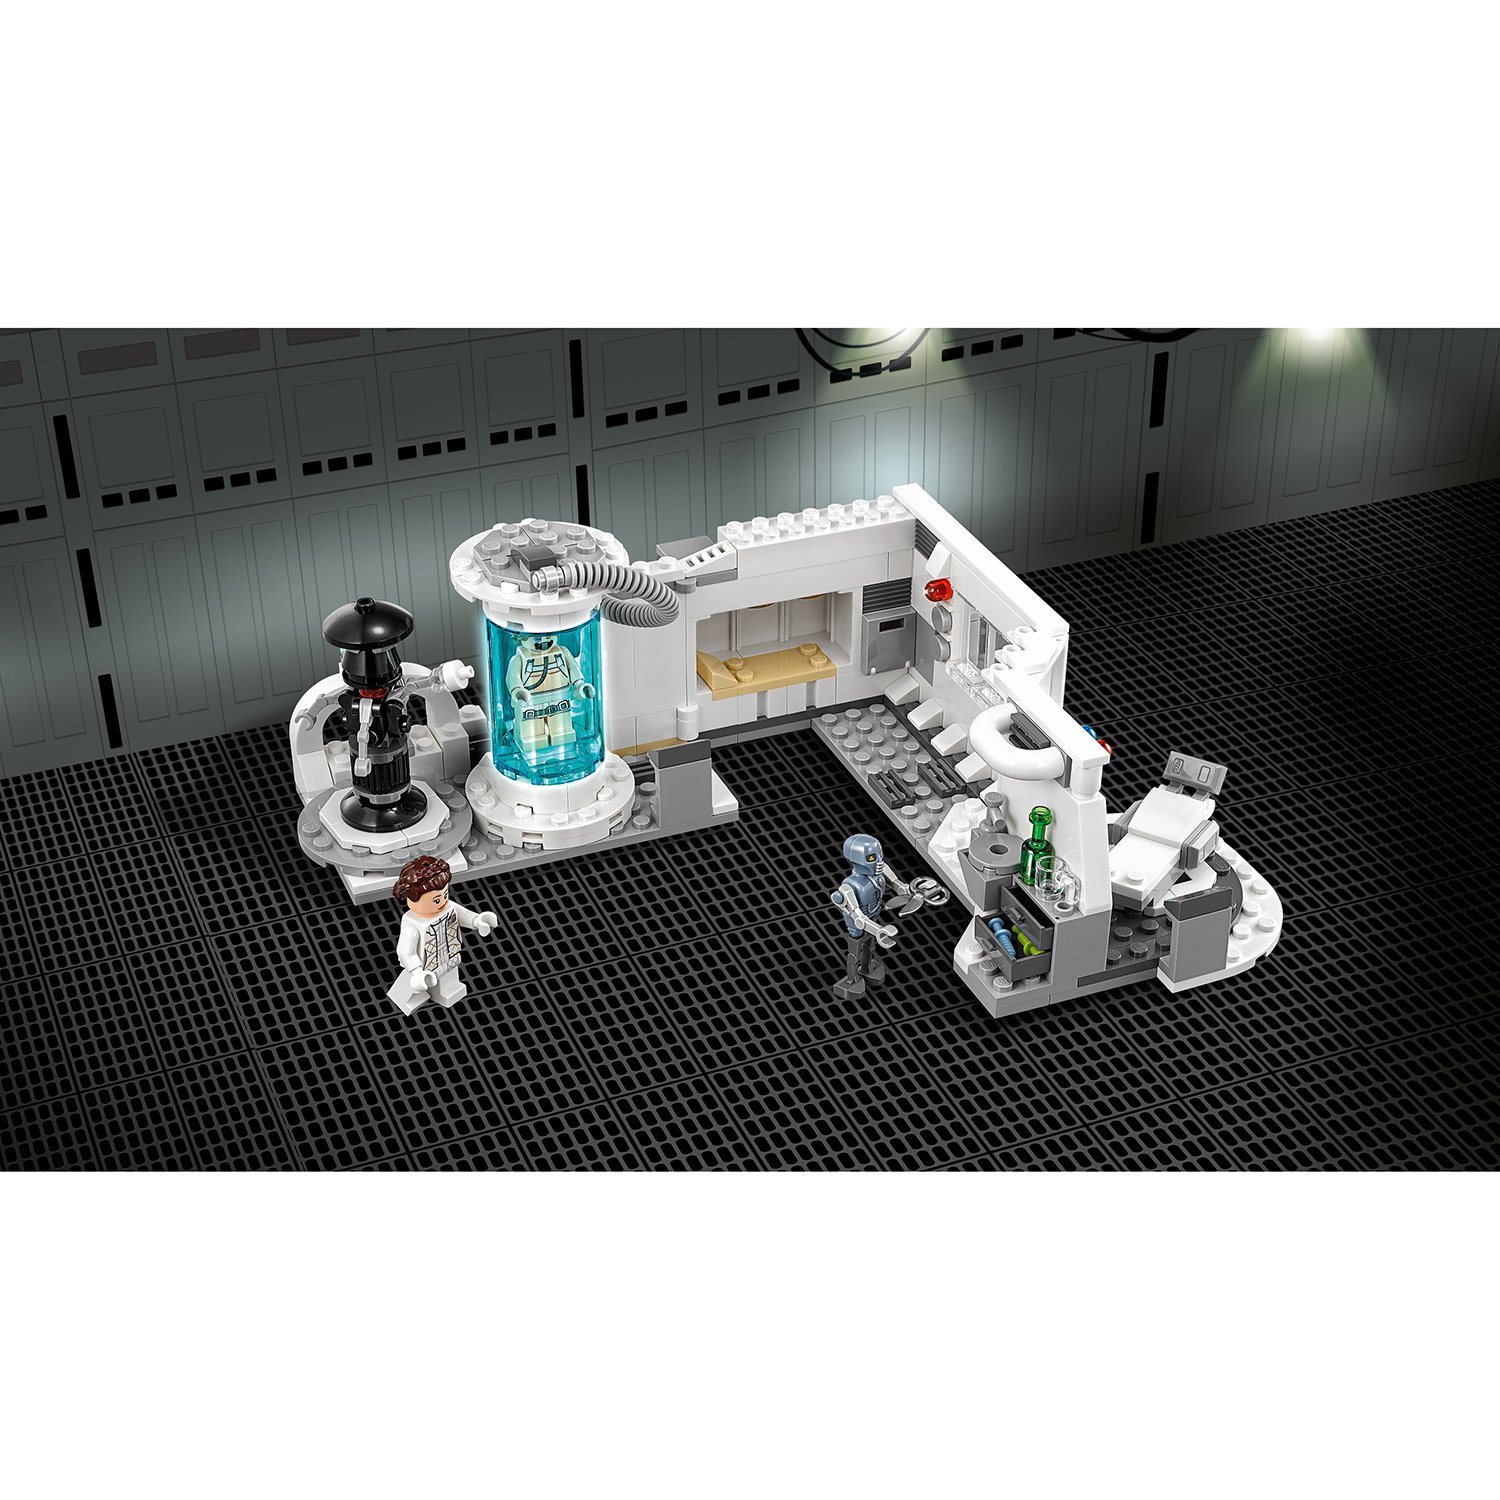 Конструктор LEGO 75203 Star Wars Спасение Люка на планете Хот